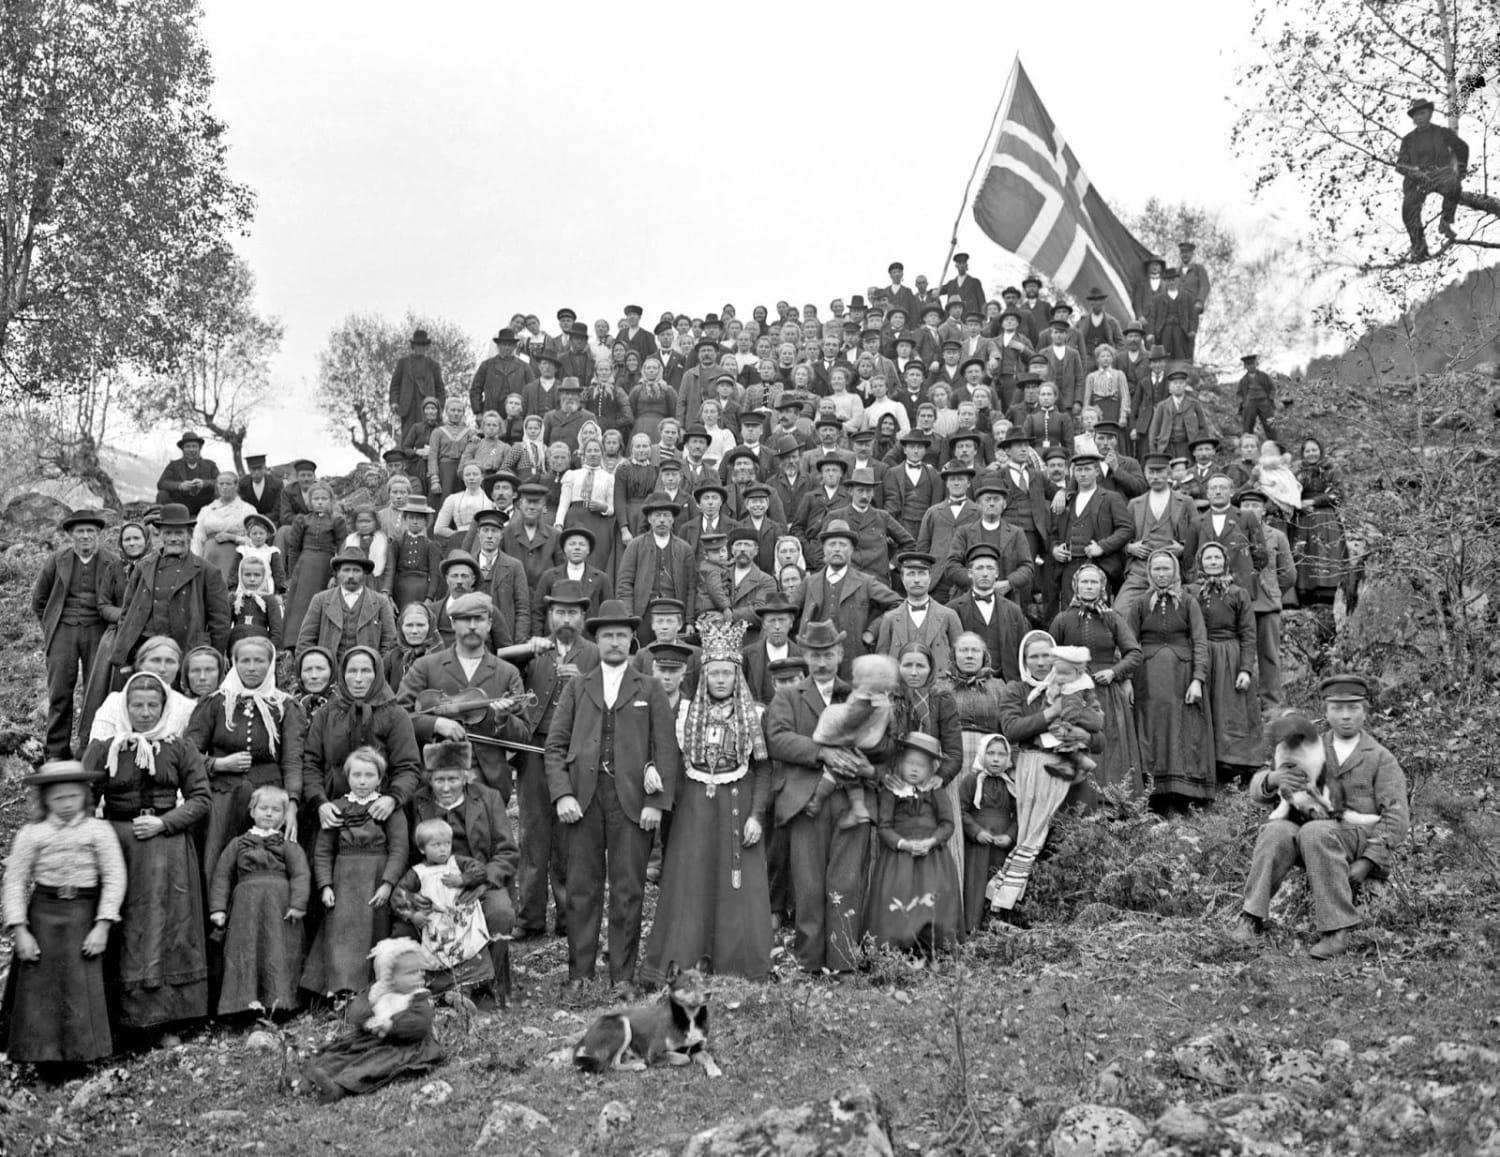 Norwegian wedding. Vestland, Norway, 1897.